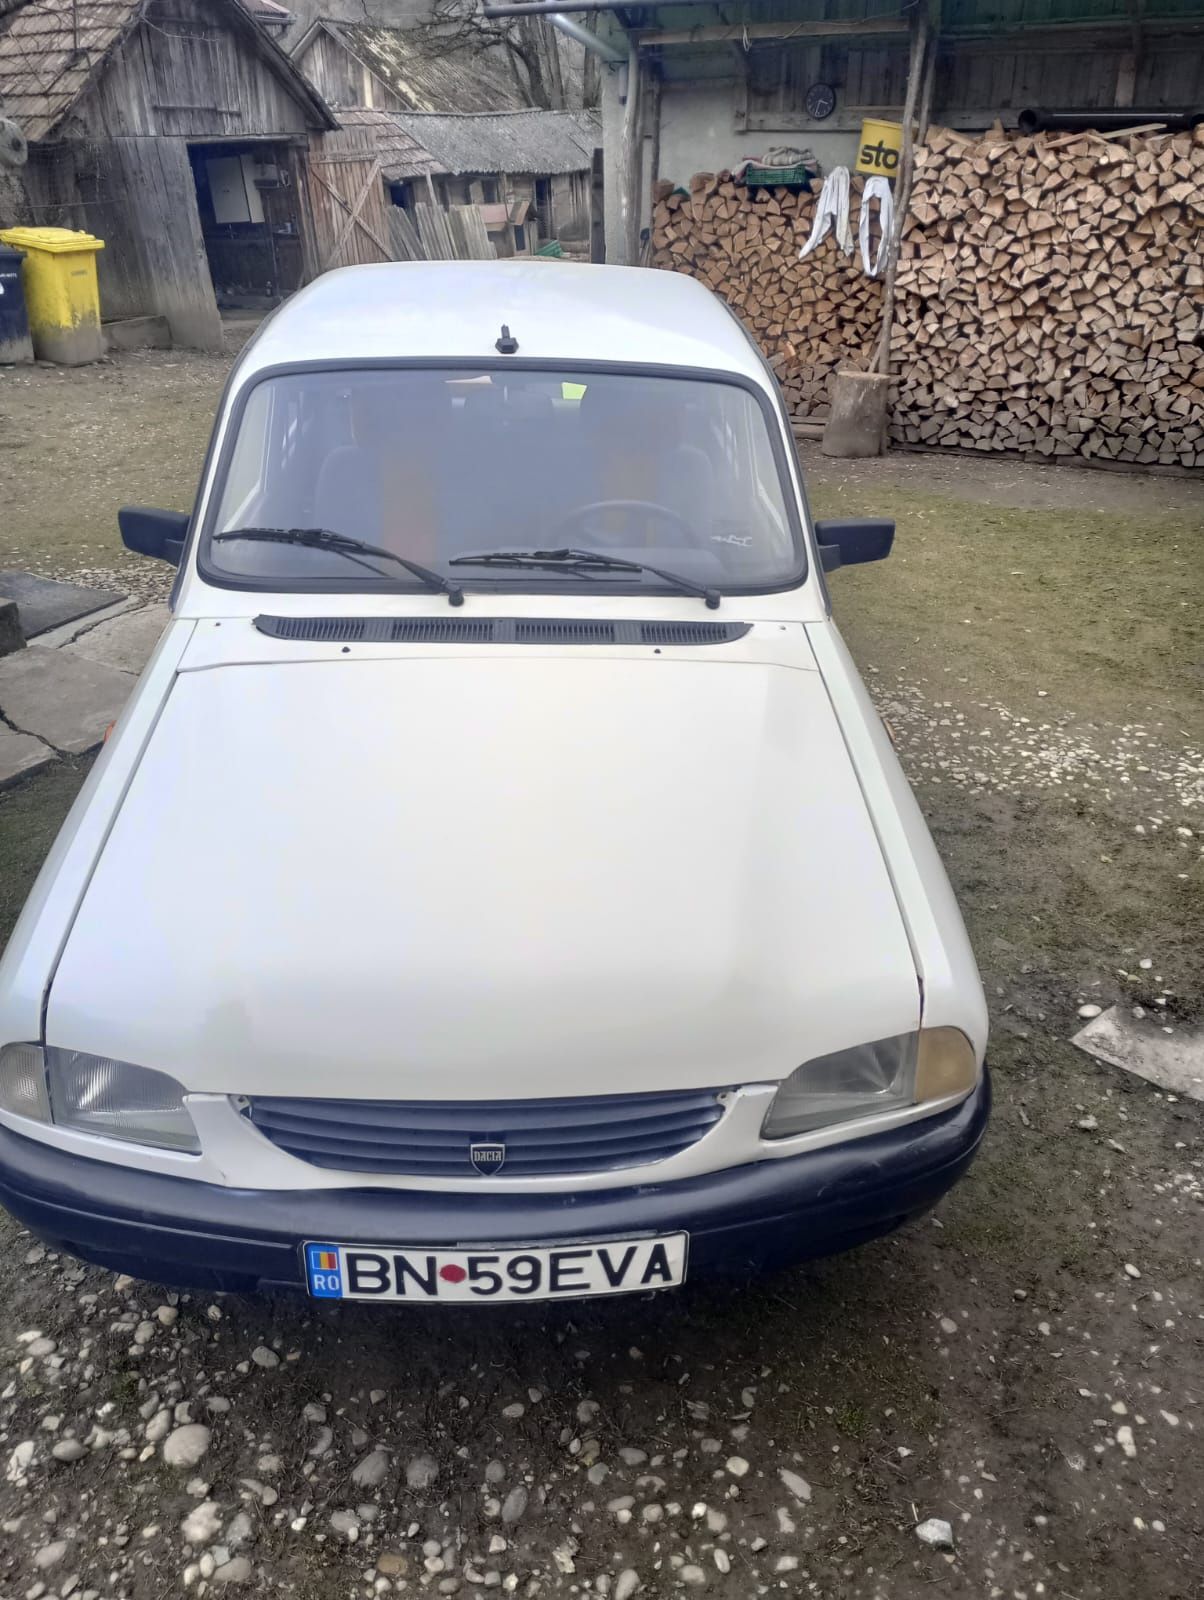 VAND Dacia 1310 anul 2000